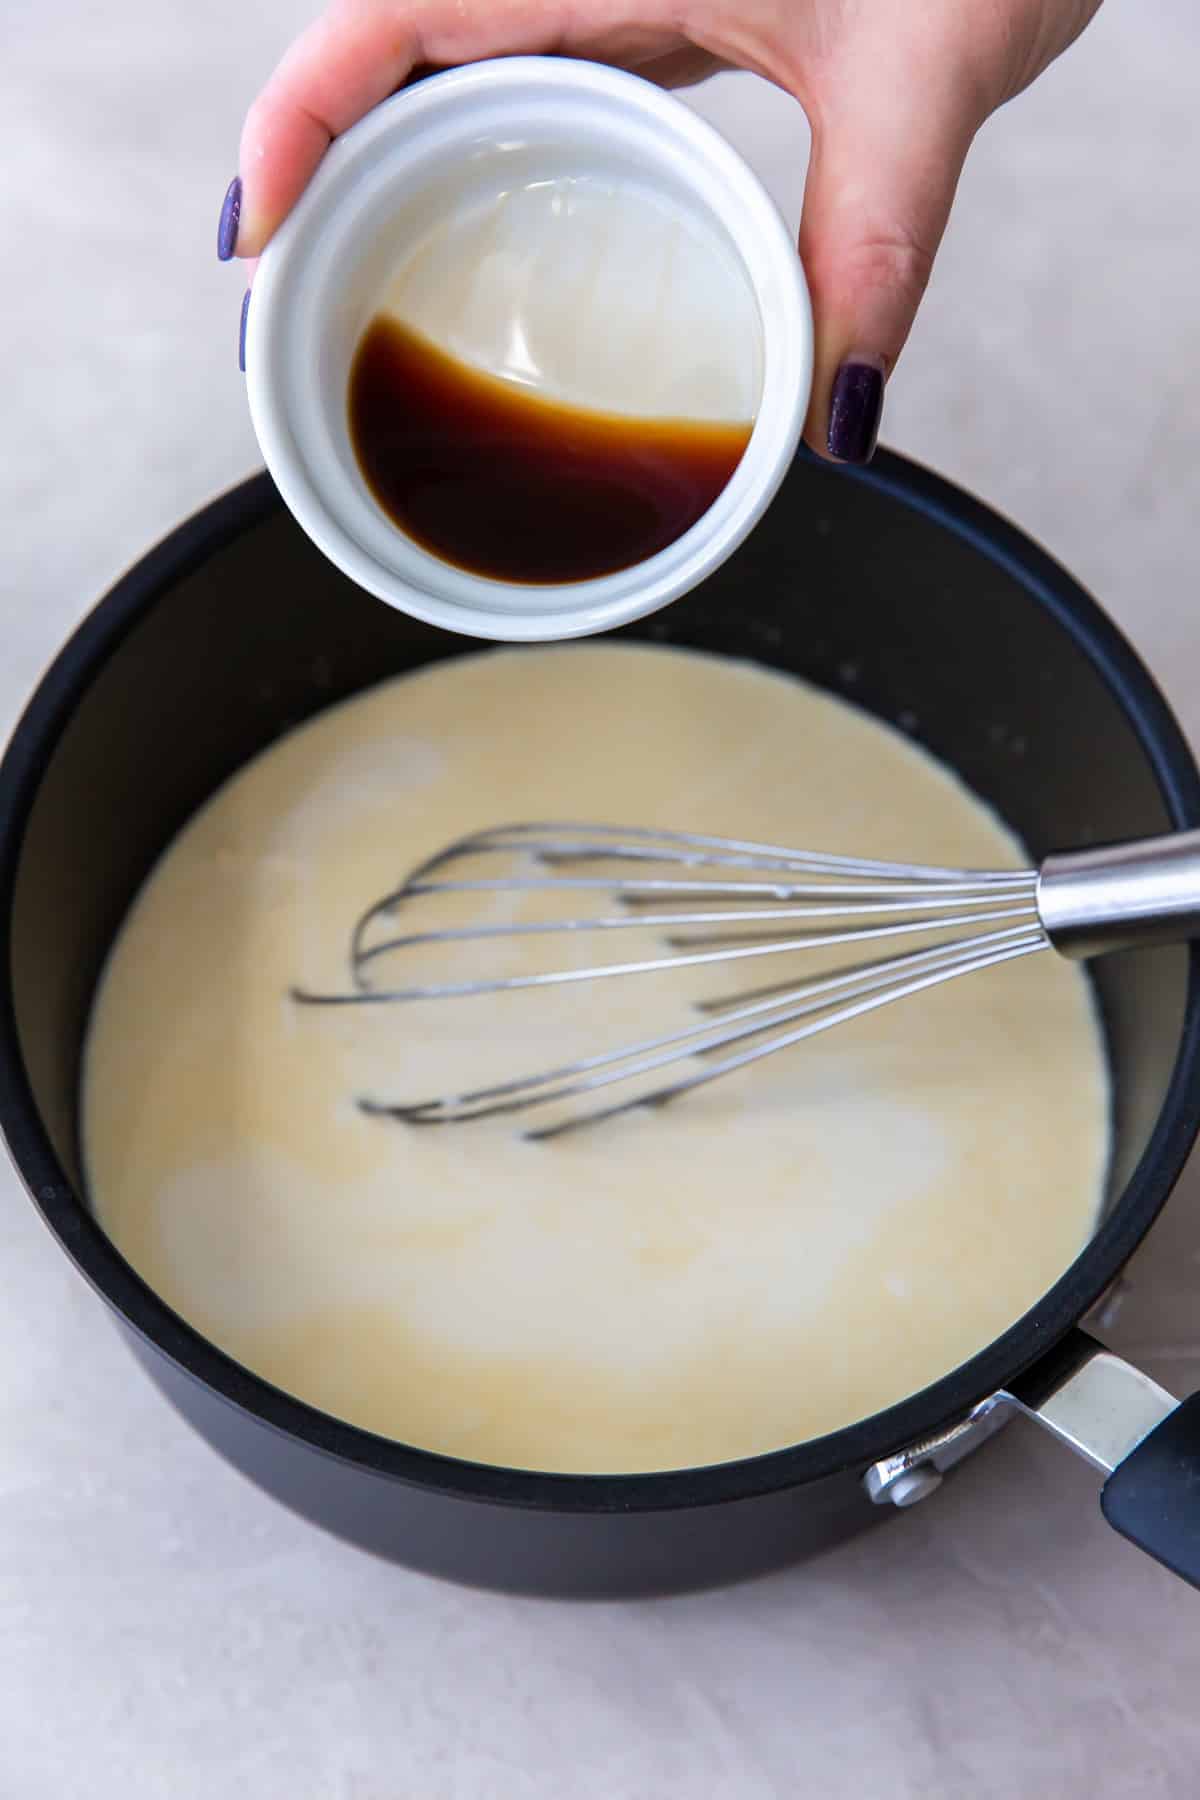 pouring vanilla extract into a saucepan